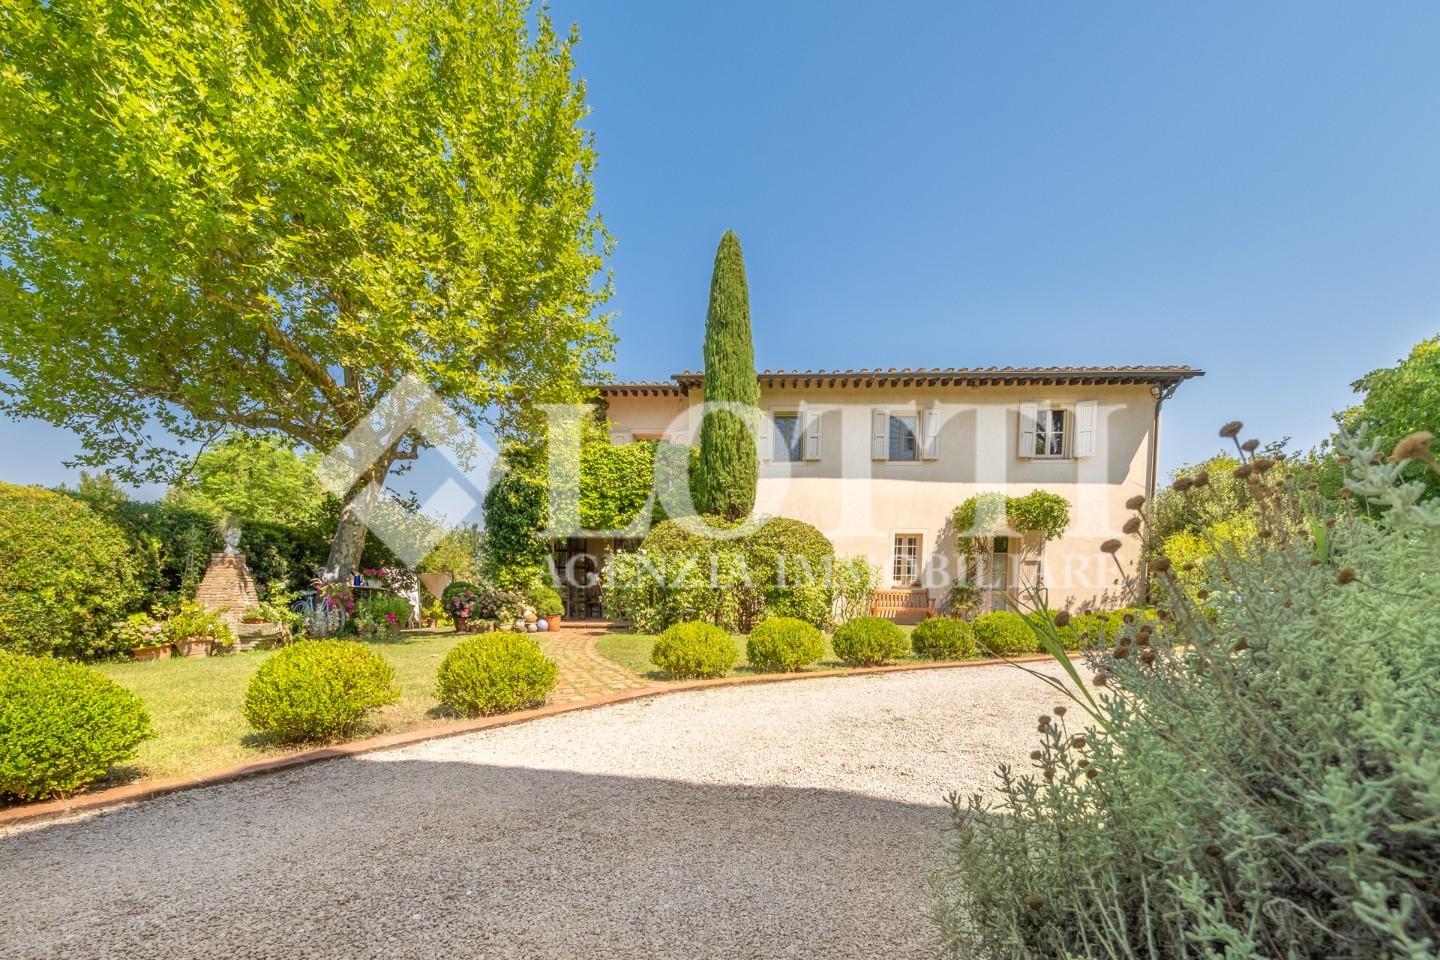 Farmhouse for sale in Marti, Montopoli in Val d'Arno (PI)